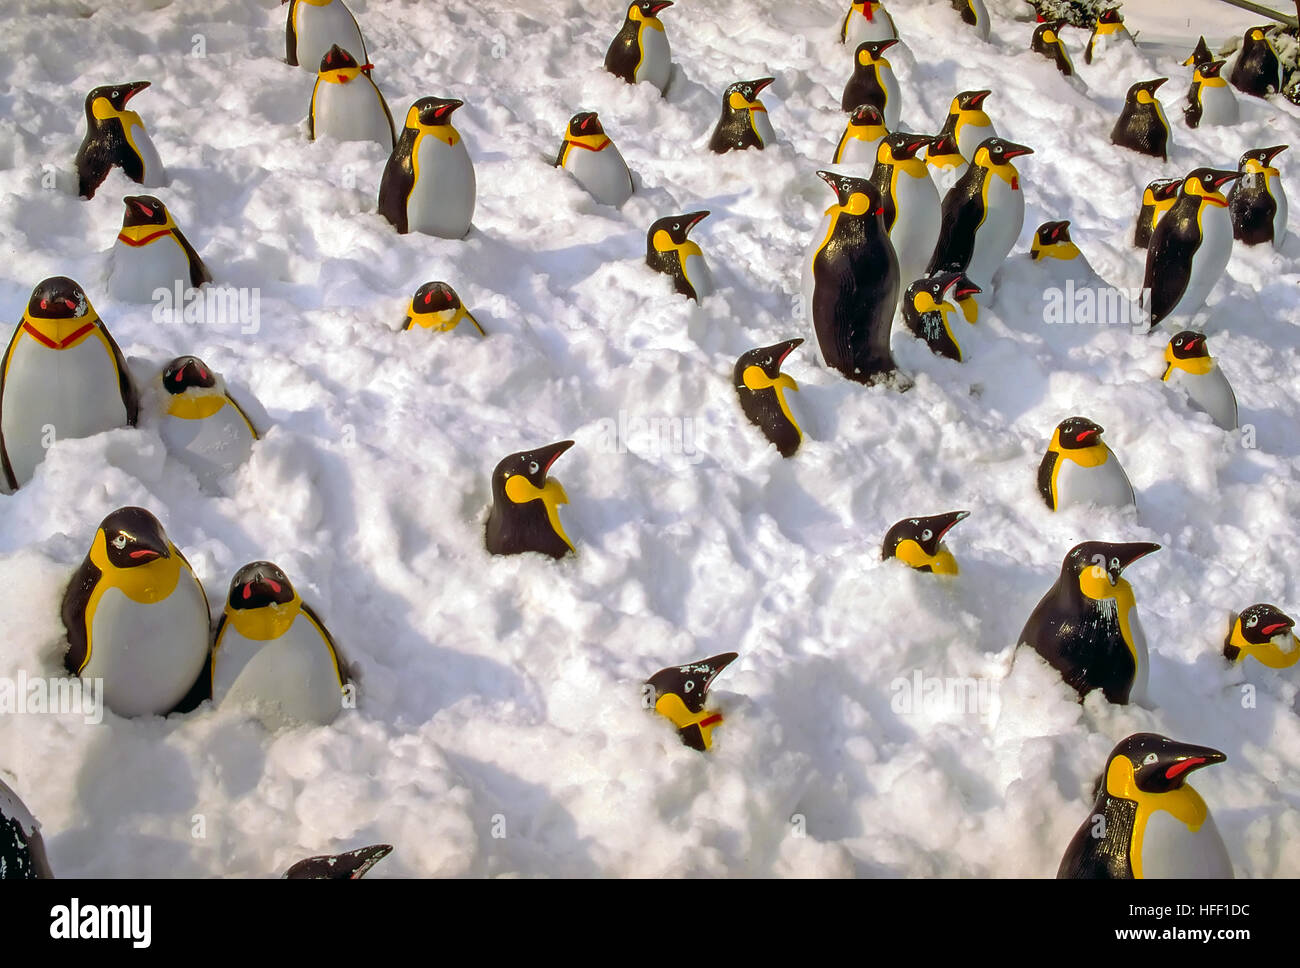 Plastica pinguini imperatore, Aptenodytes forstein, spiccanti da una banca di neve. Foto Stock